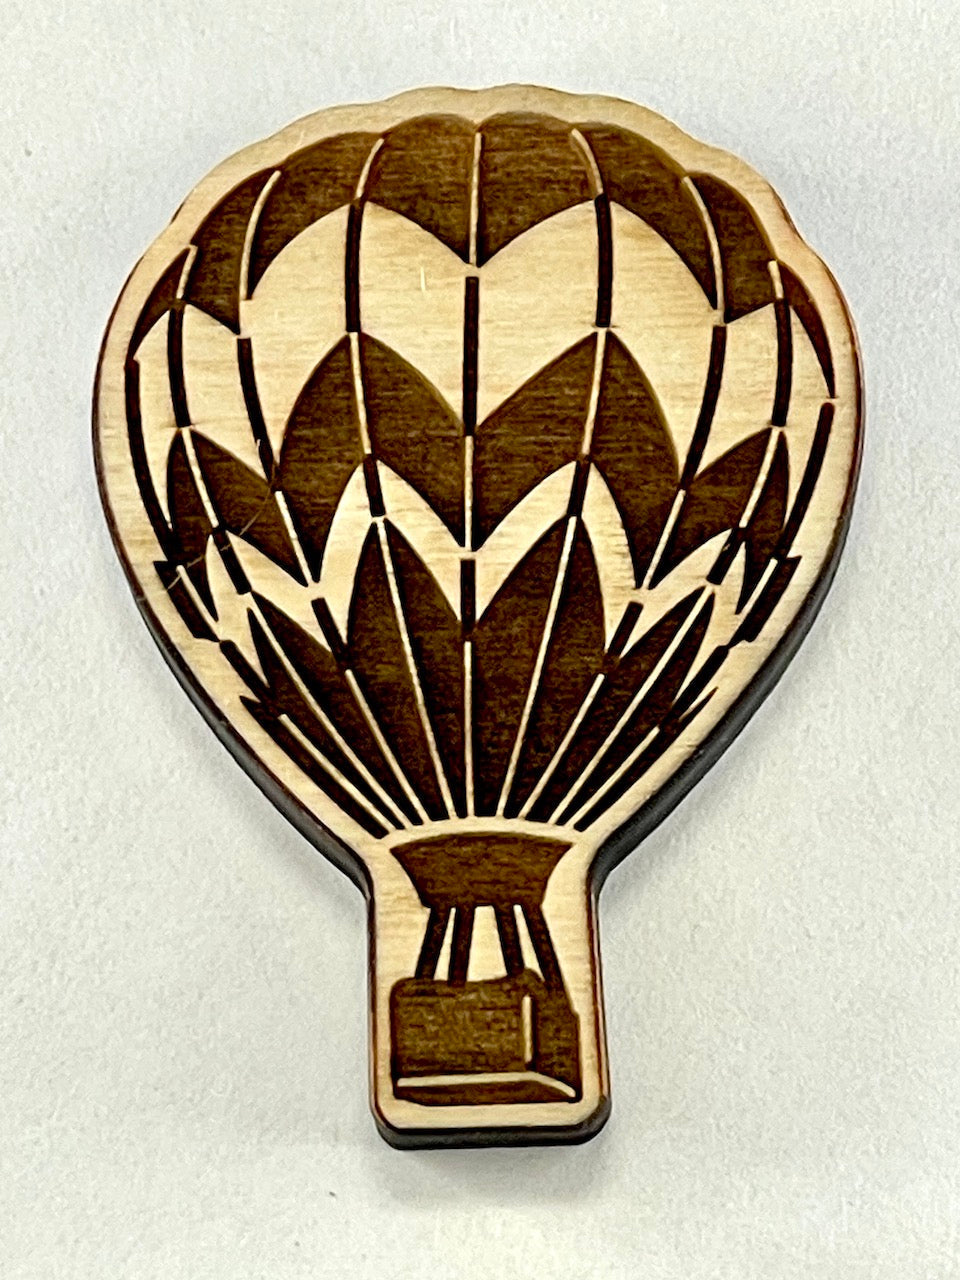 Hot Air Balloon (Chevron) Small- Stamp